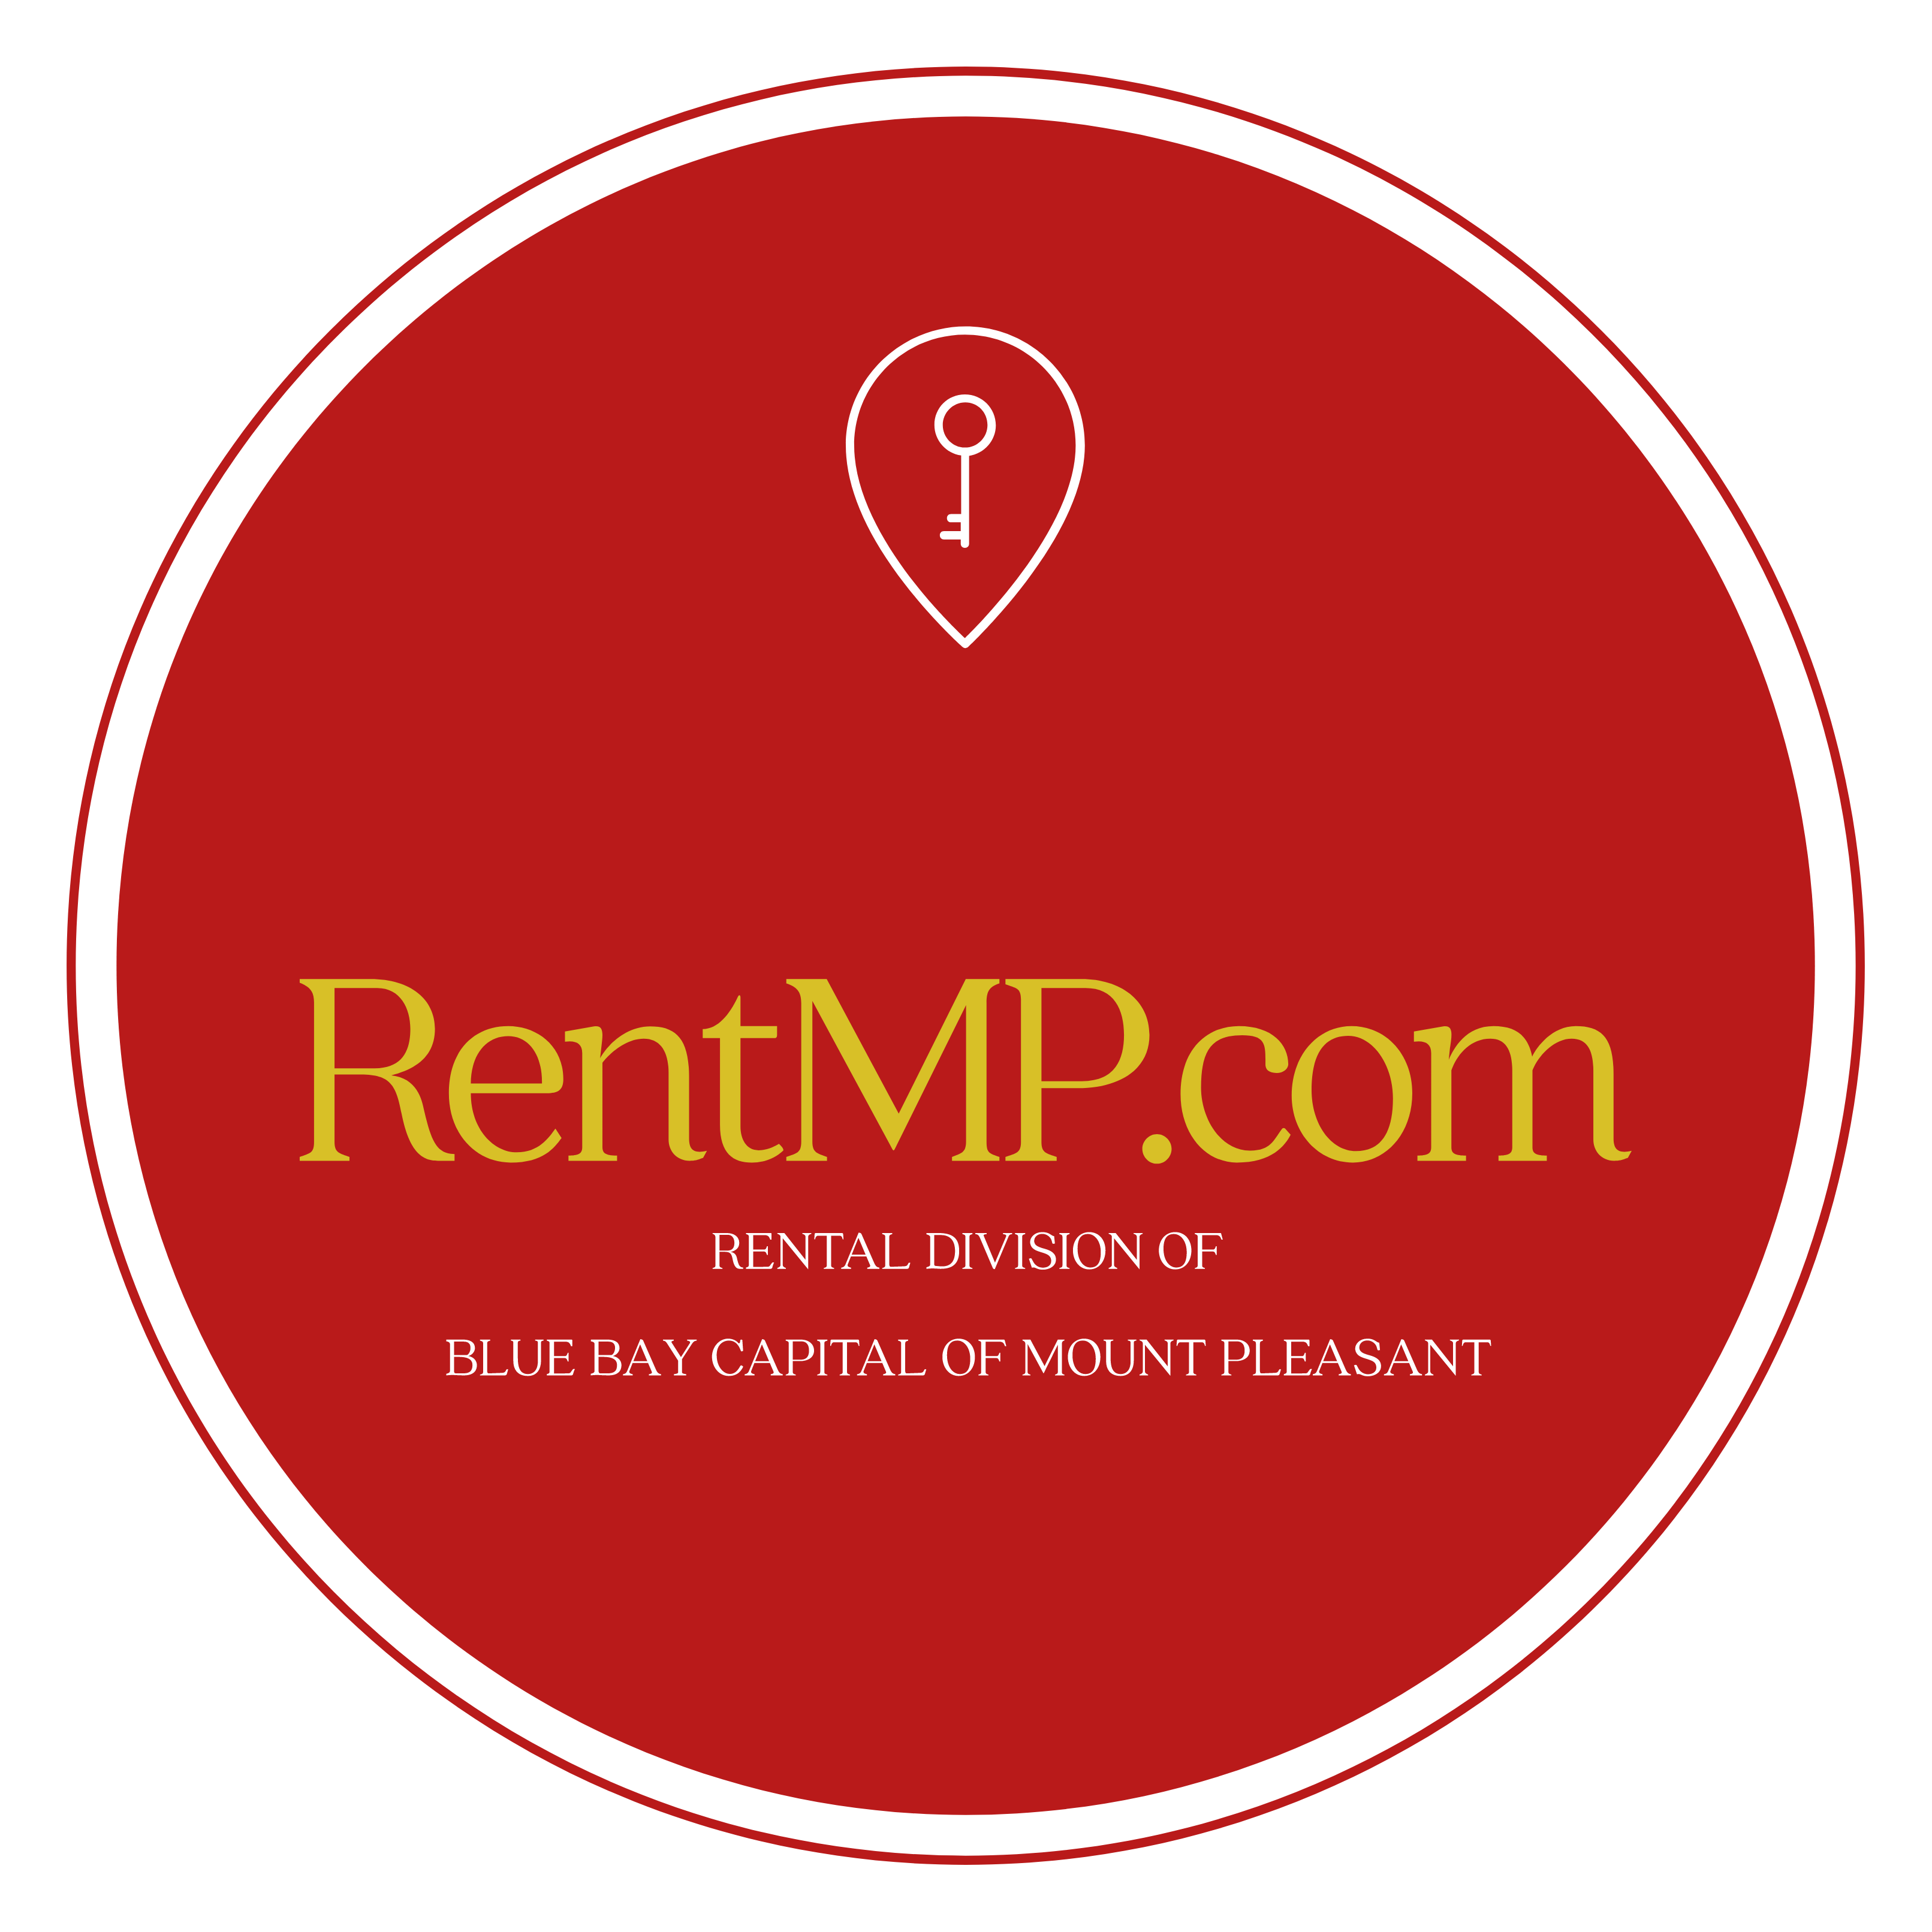 RentMP.com